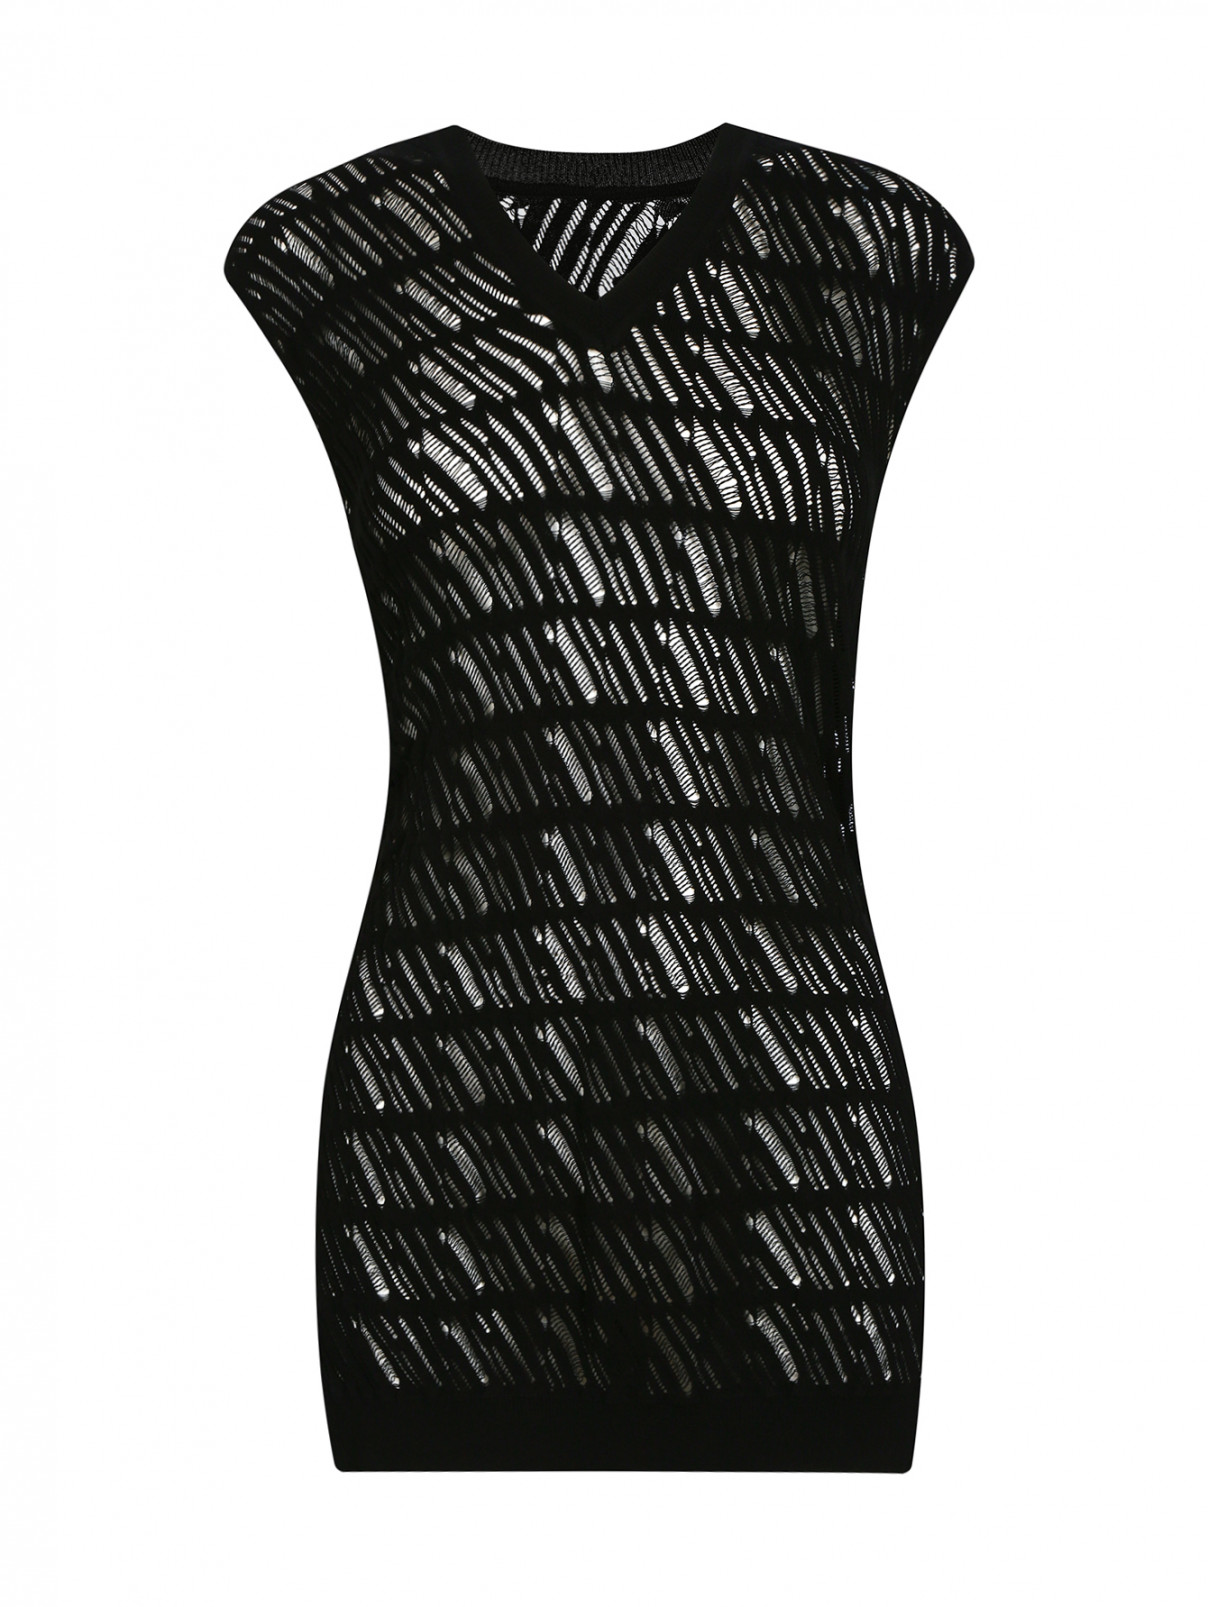 Удлиненный жилет с узорной вязкой Kenzo  –  Общий вид  – Цвет:  Черный